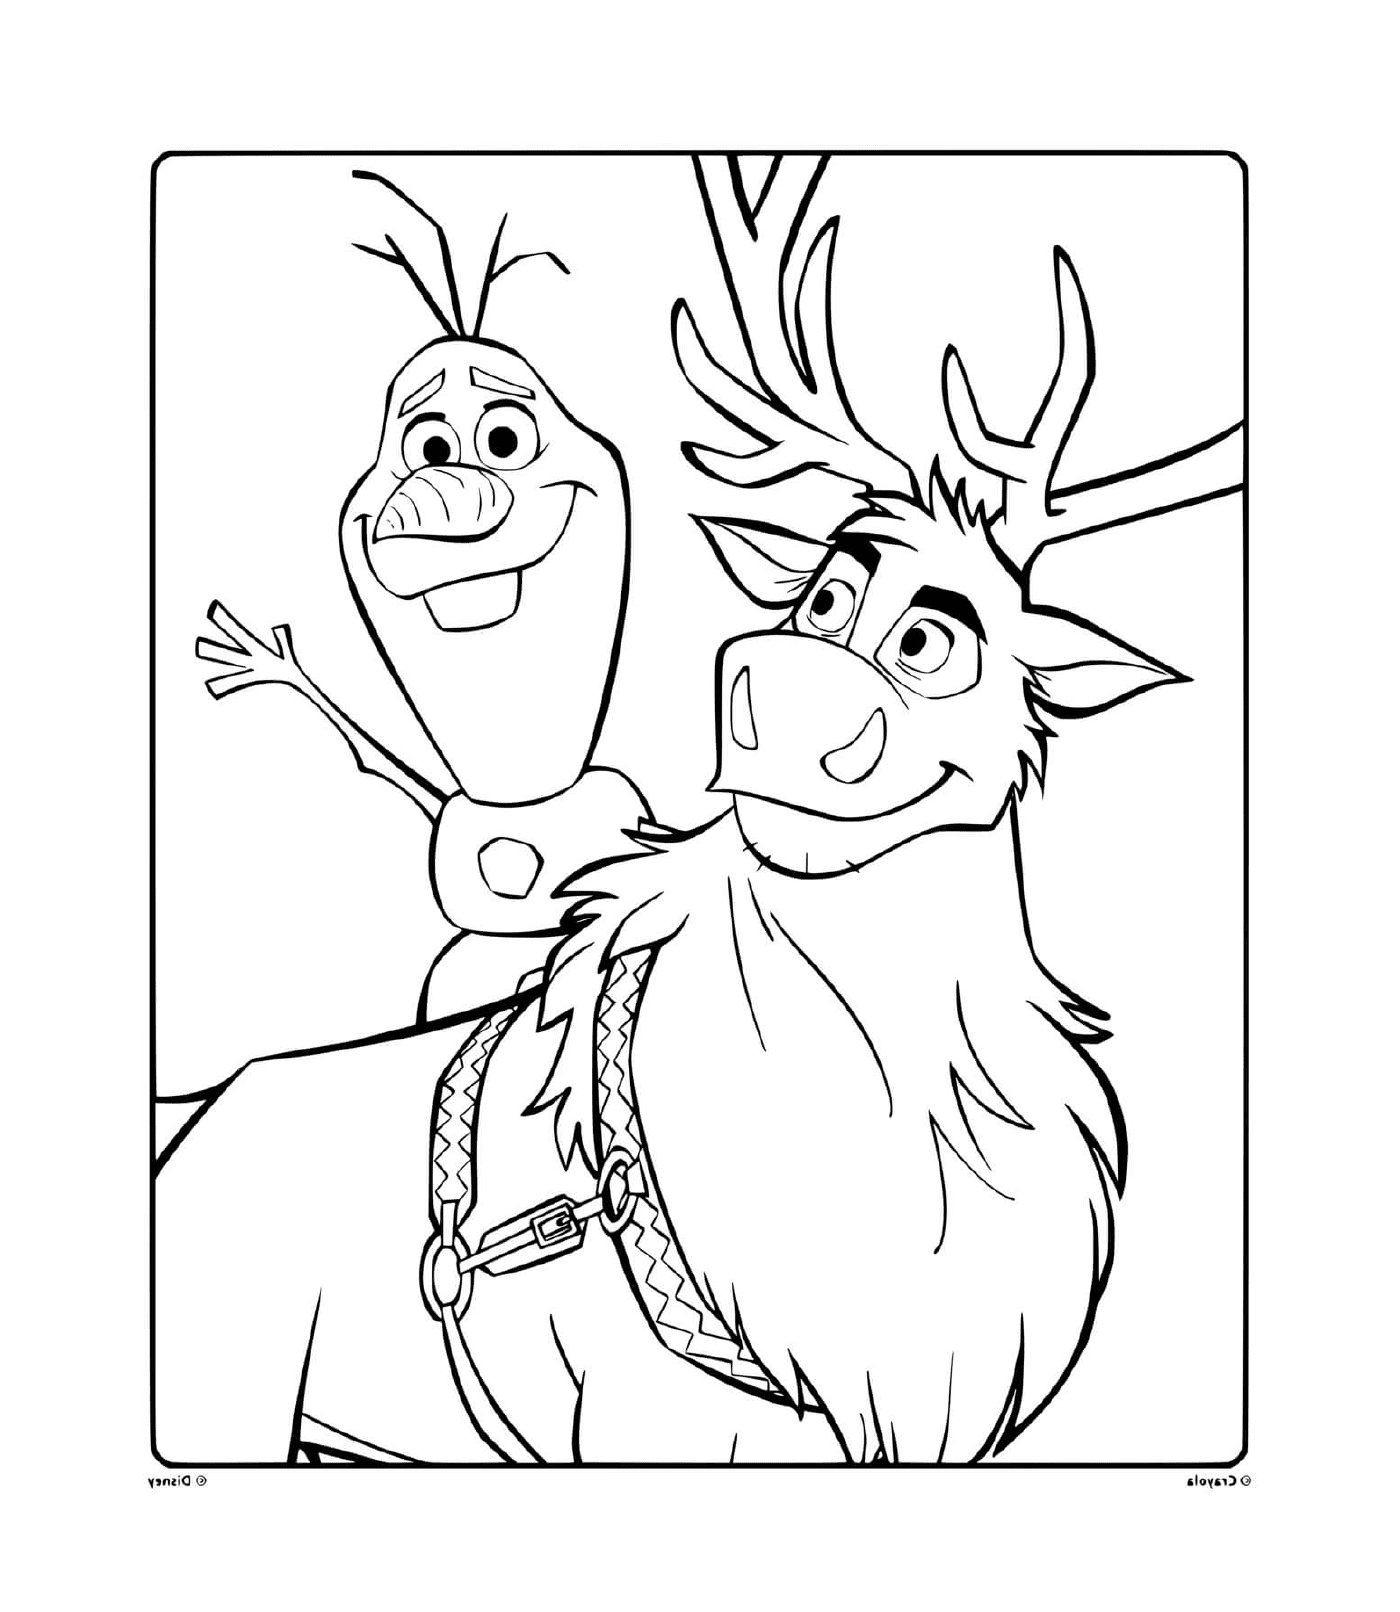  Olaf e Sven, companheiros 